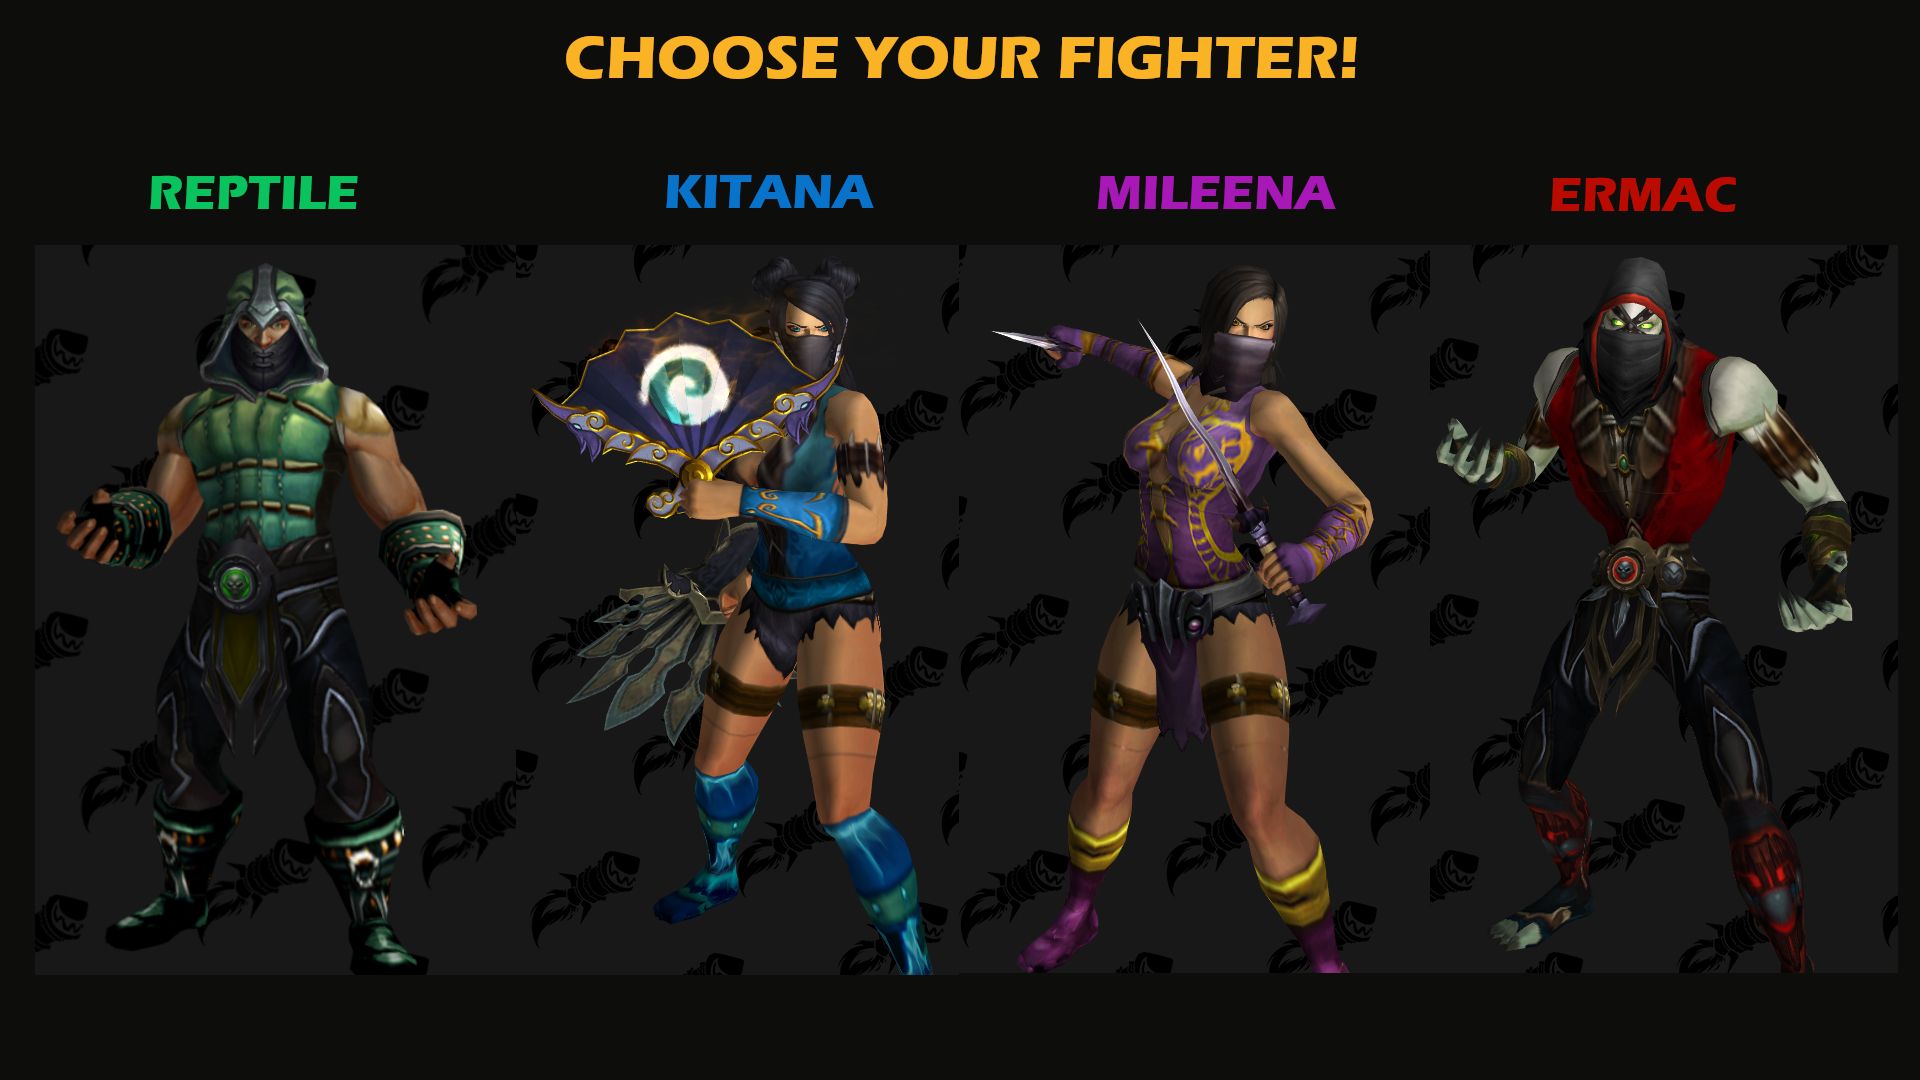 Трансмогрификация героев WoW в стиле Mortal Kombat. Источник: reddit. Автор: Timbodo